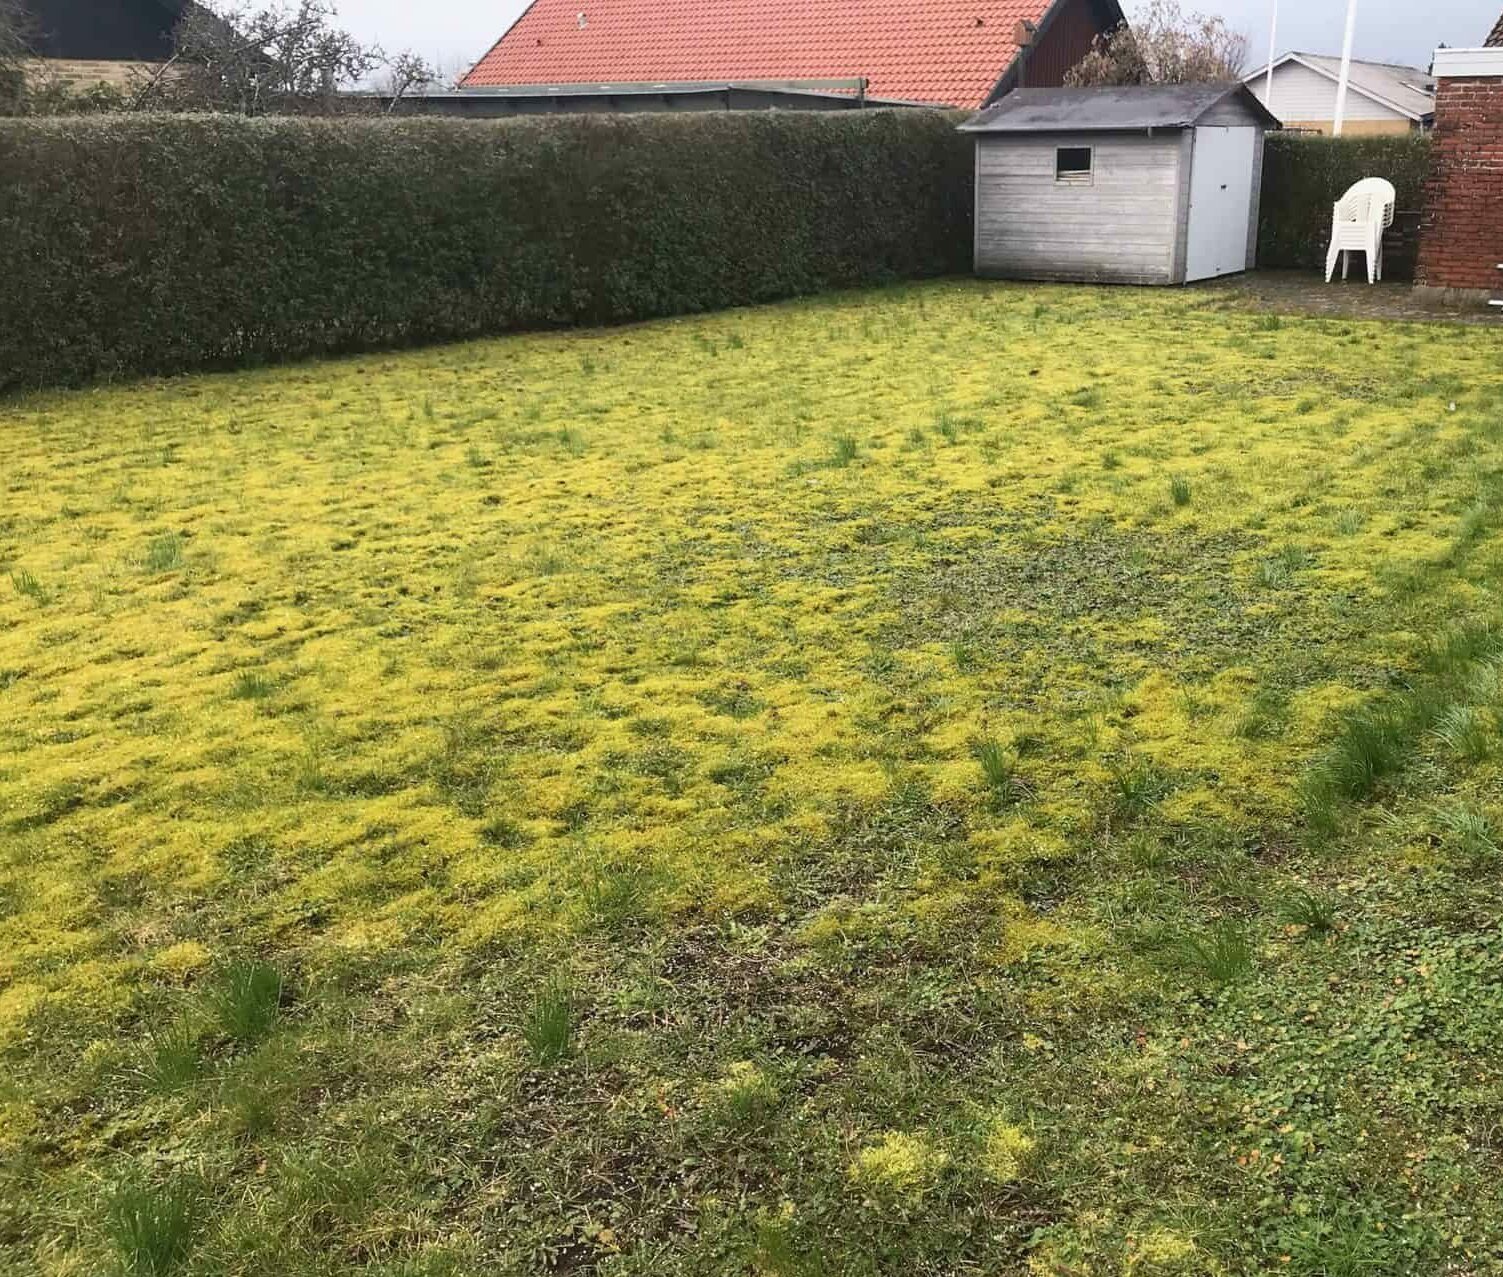 ødelagt og gul græsplæne, der har brug for græspleje, med hus i baggrunden